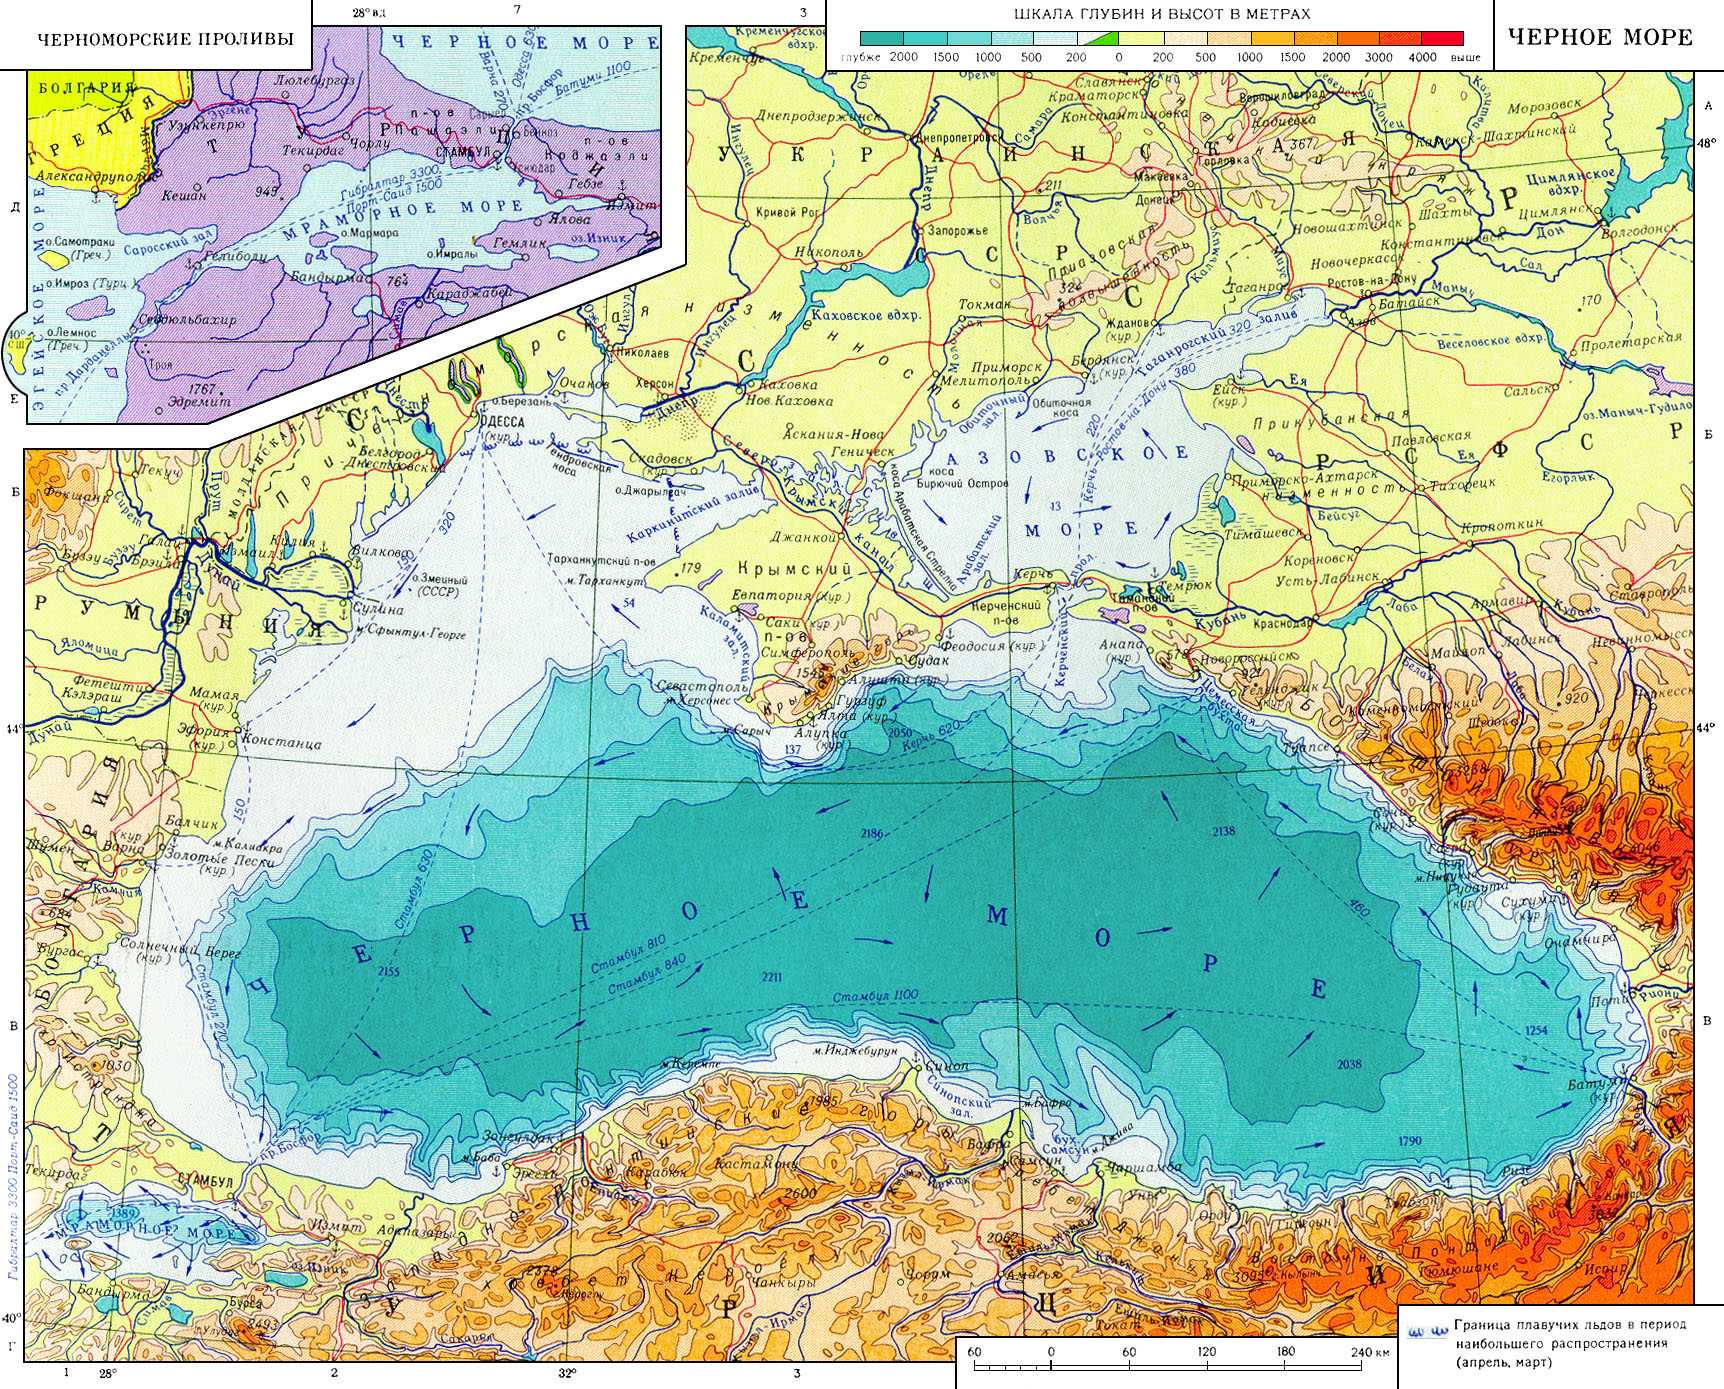 Великобритания и Норвегия изъяли из продажи навигационные карты РФ вод Украины